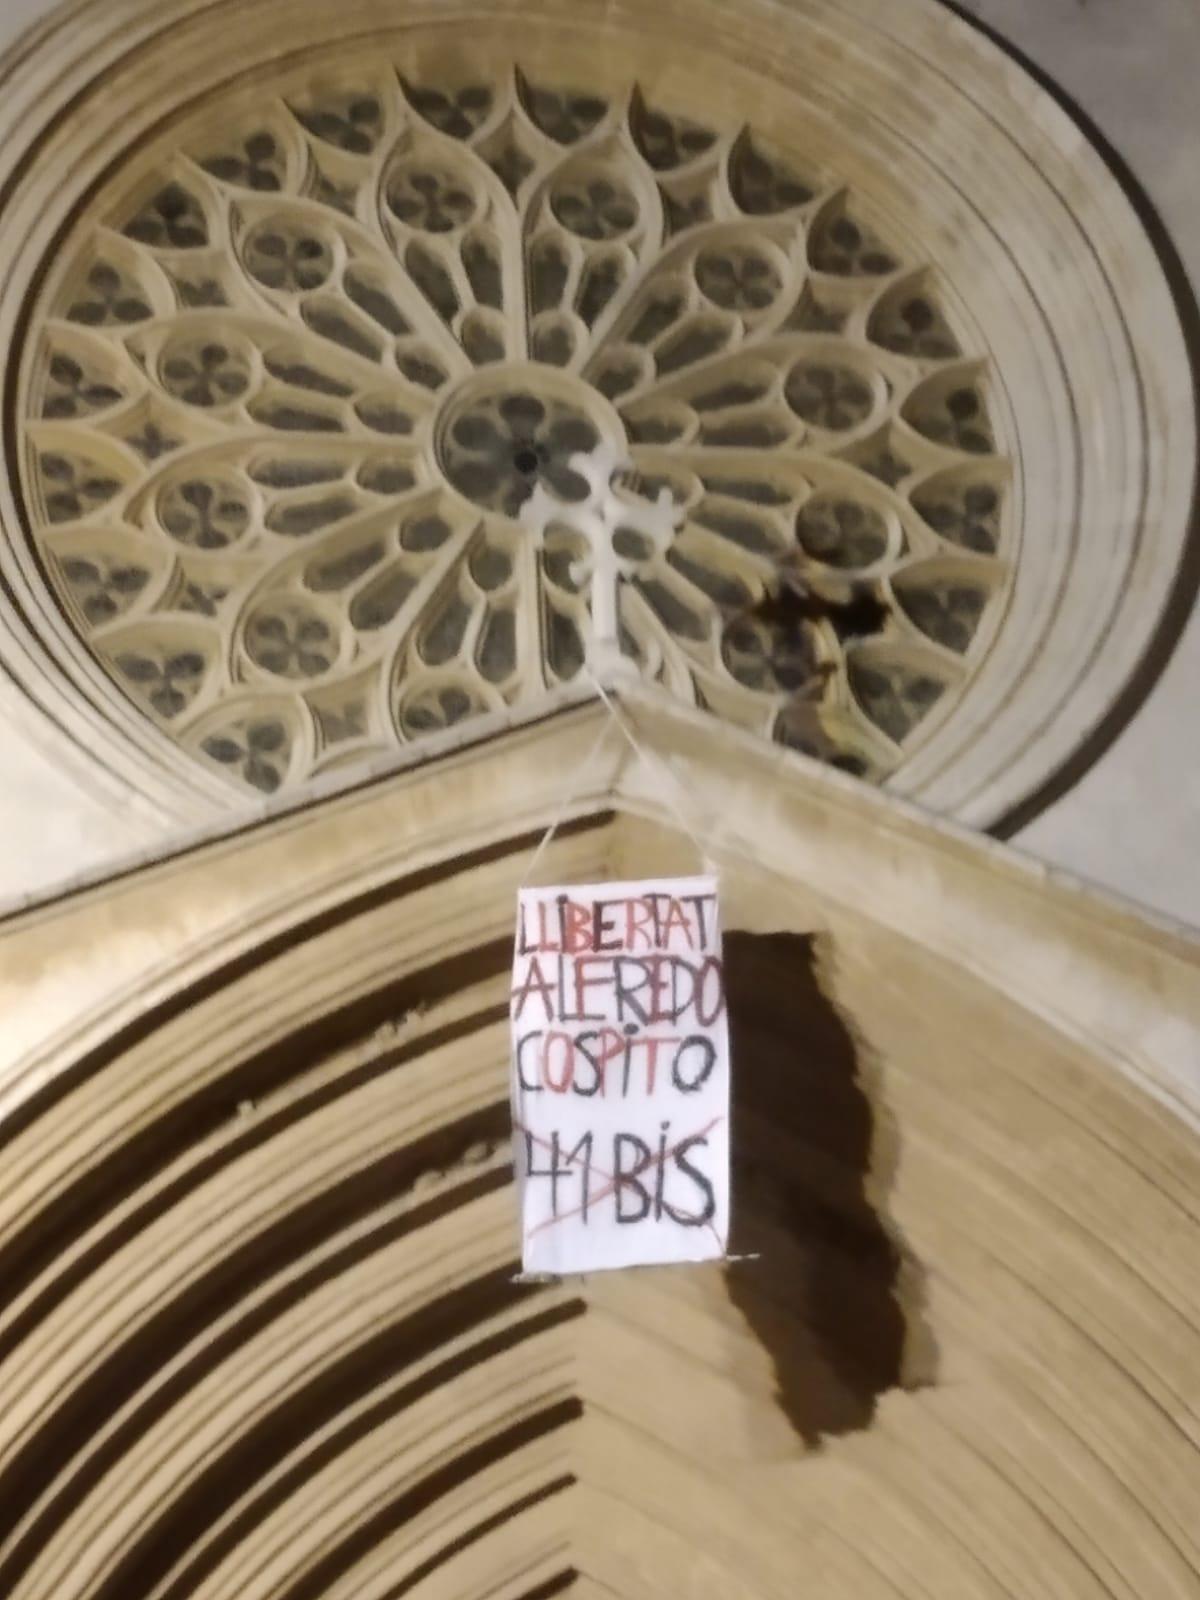 Tarragona: pancarta en solidaridad con Alfredo Cospito en la catedral